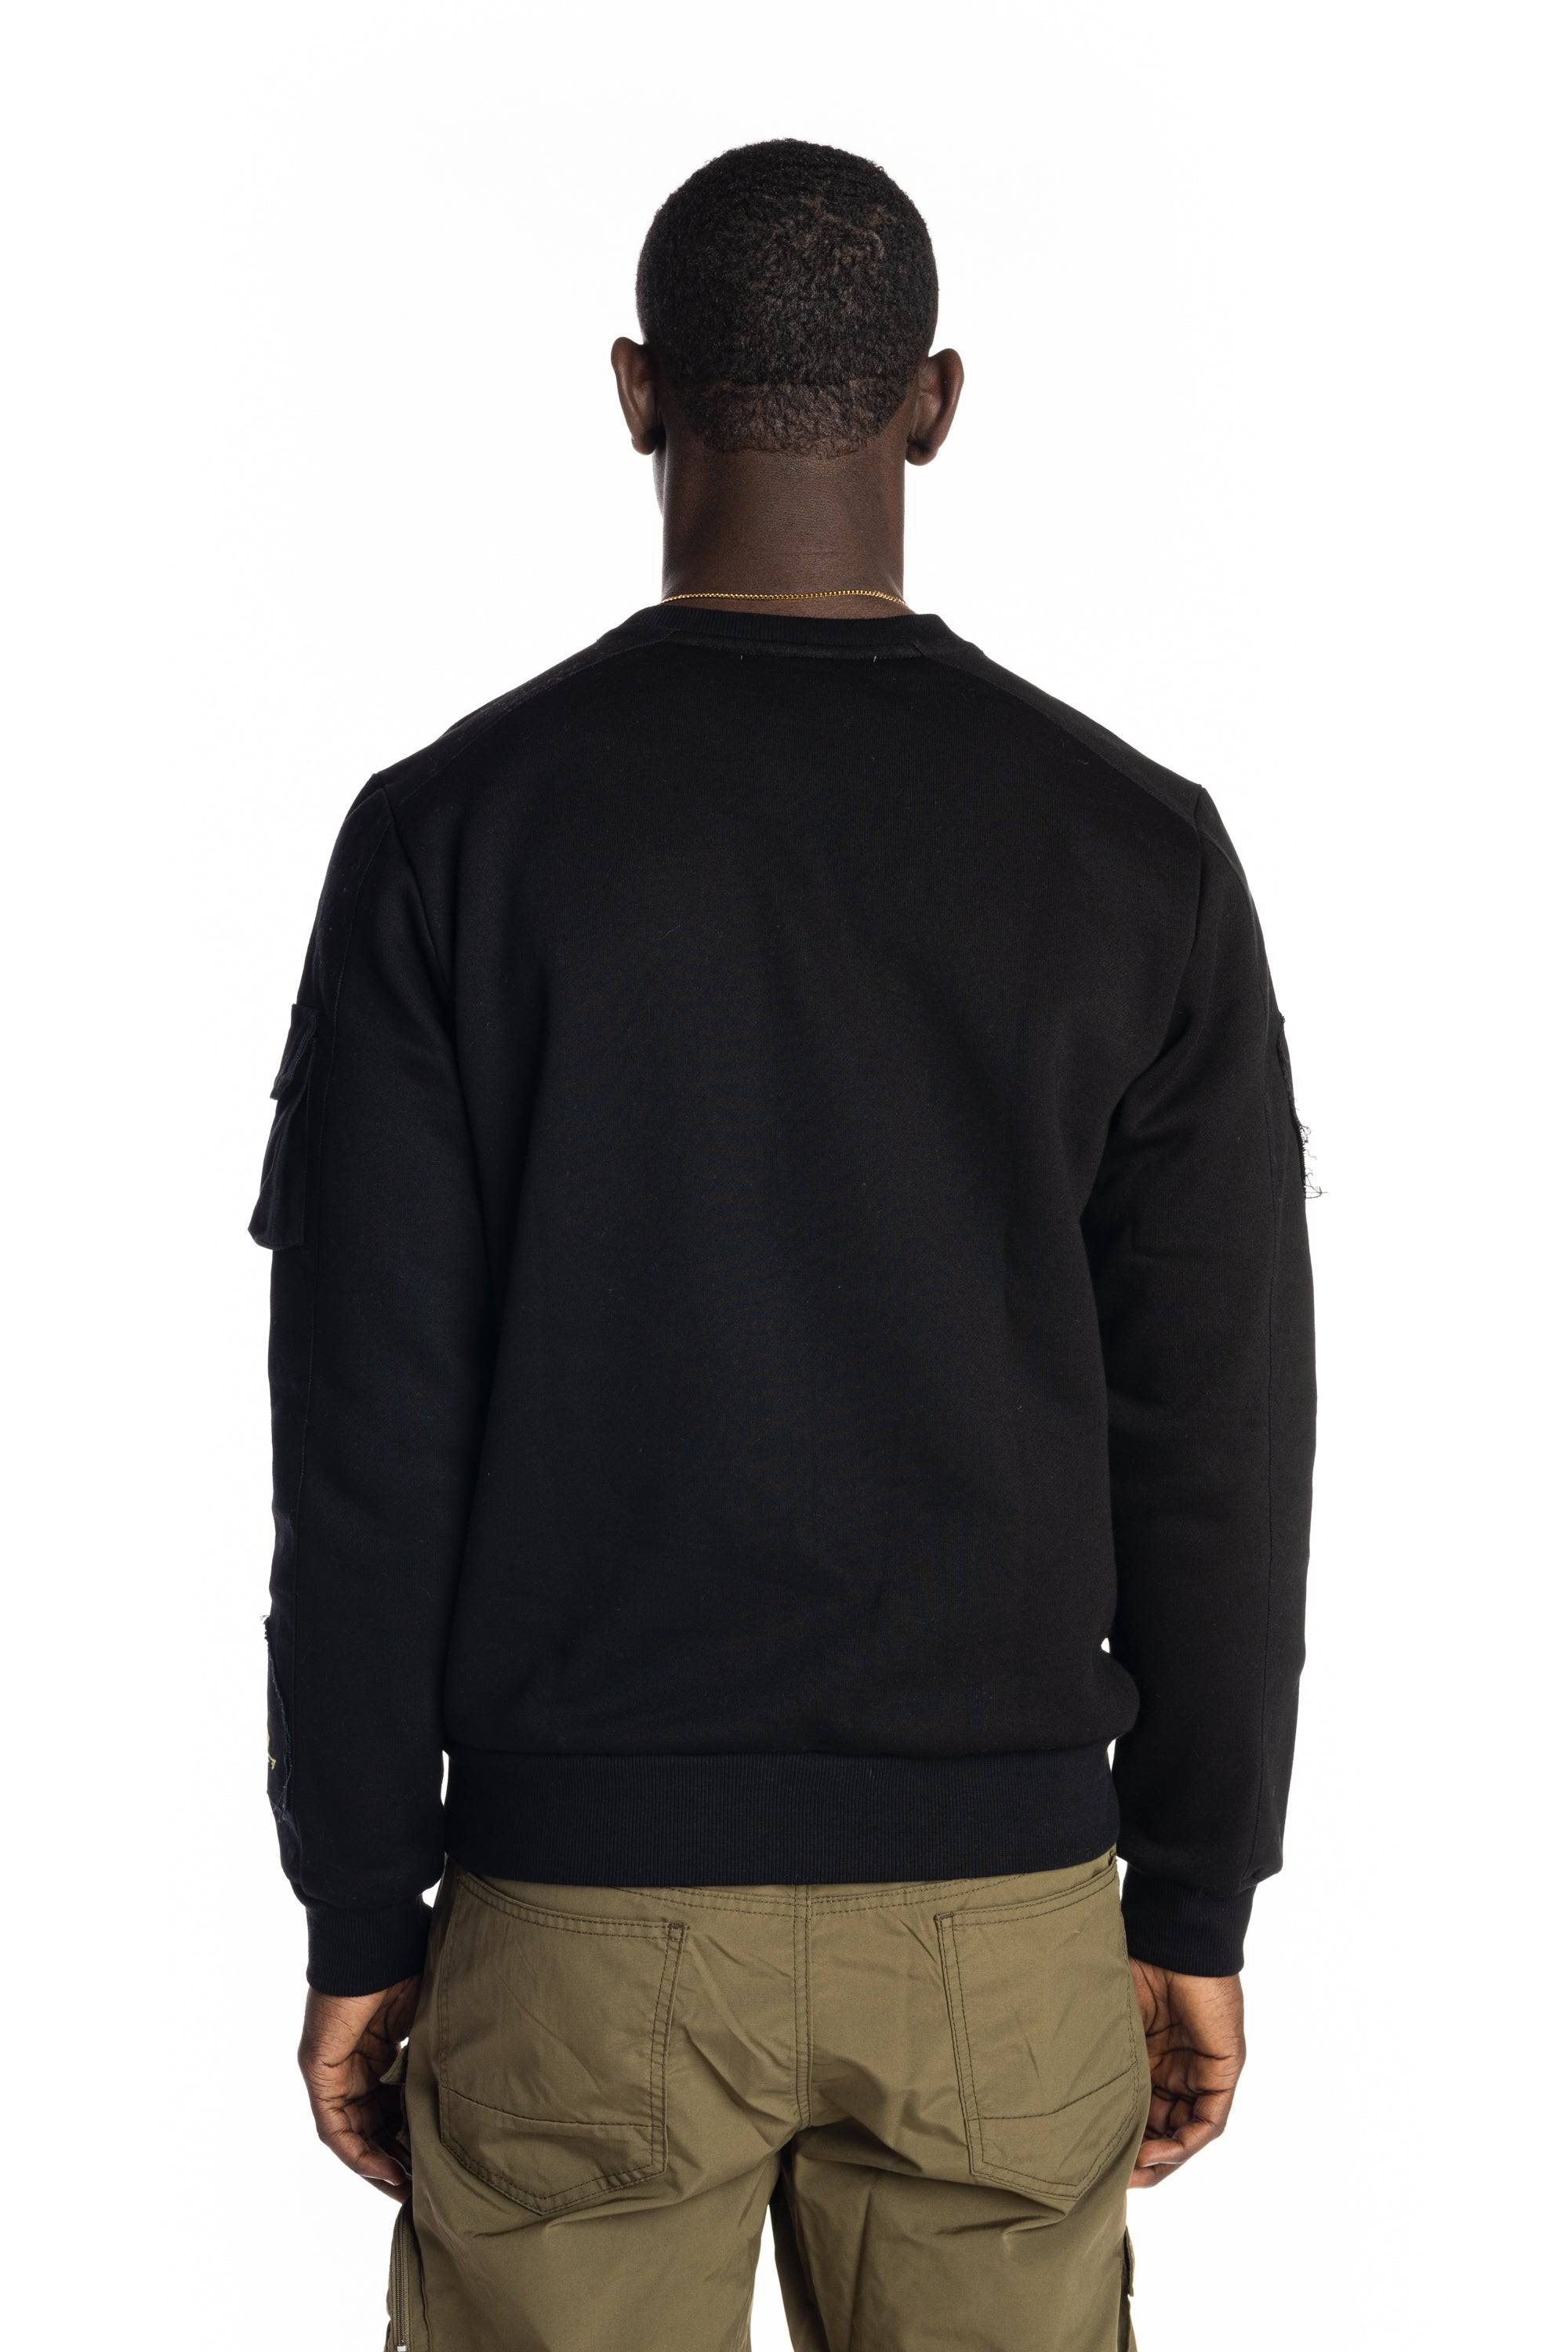 Utility Fashion Sweatshirt Black - Smoke Rise